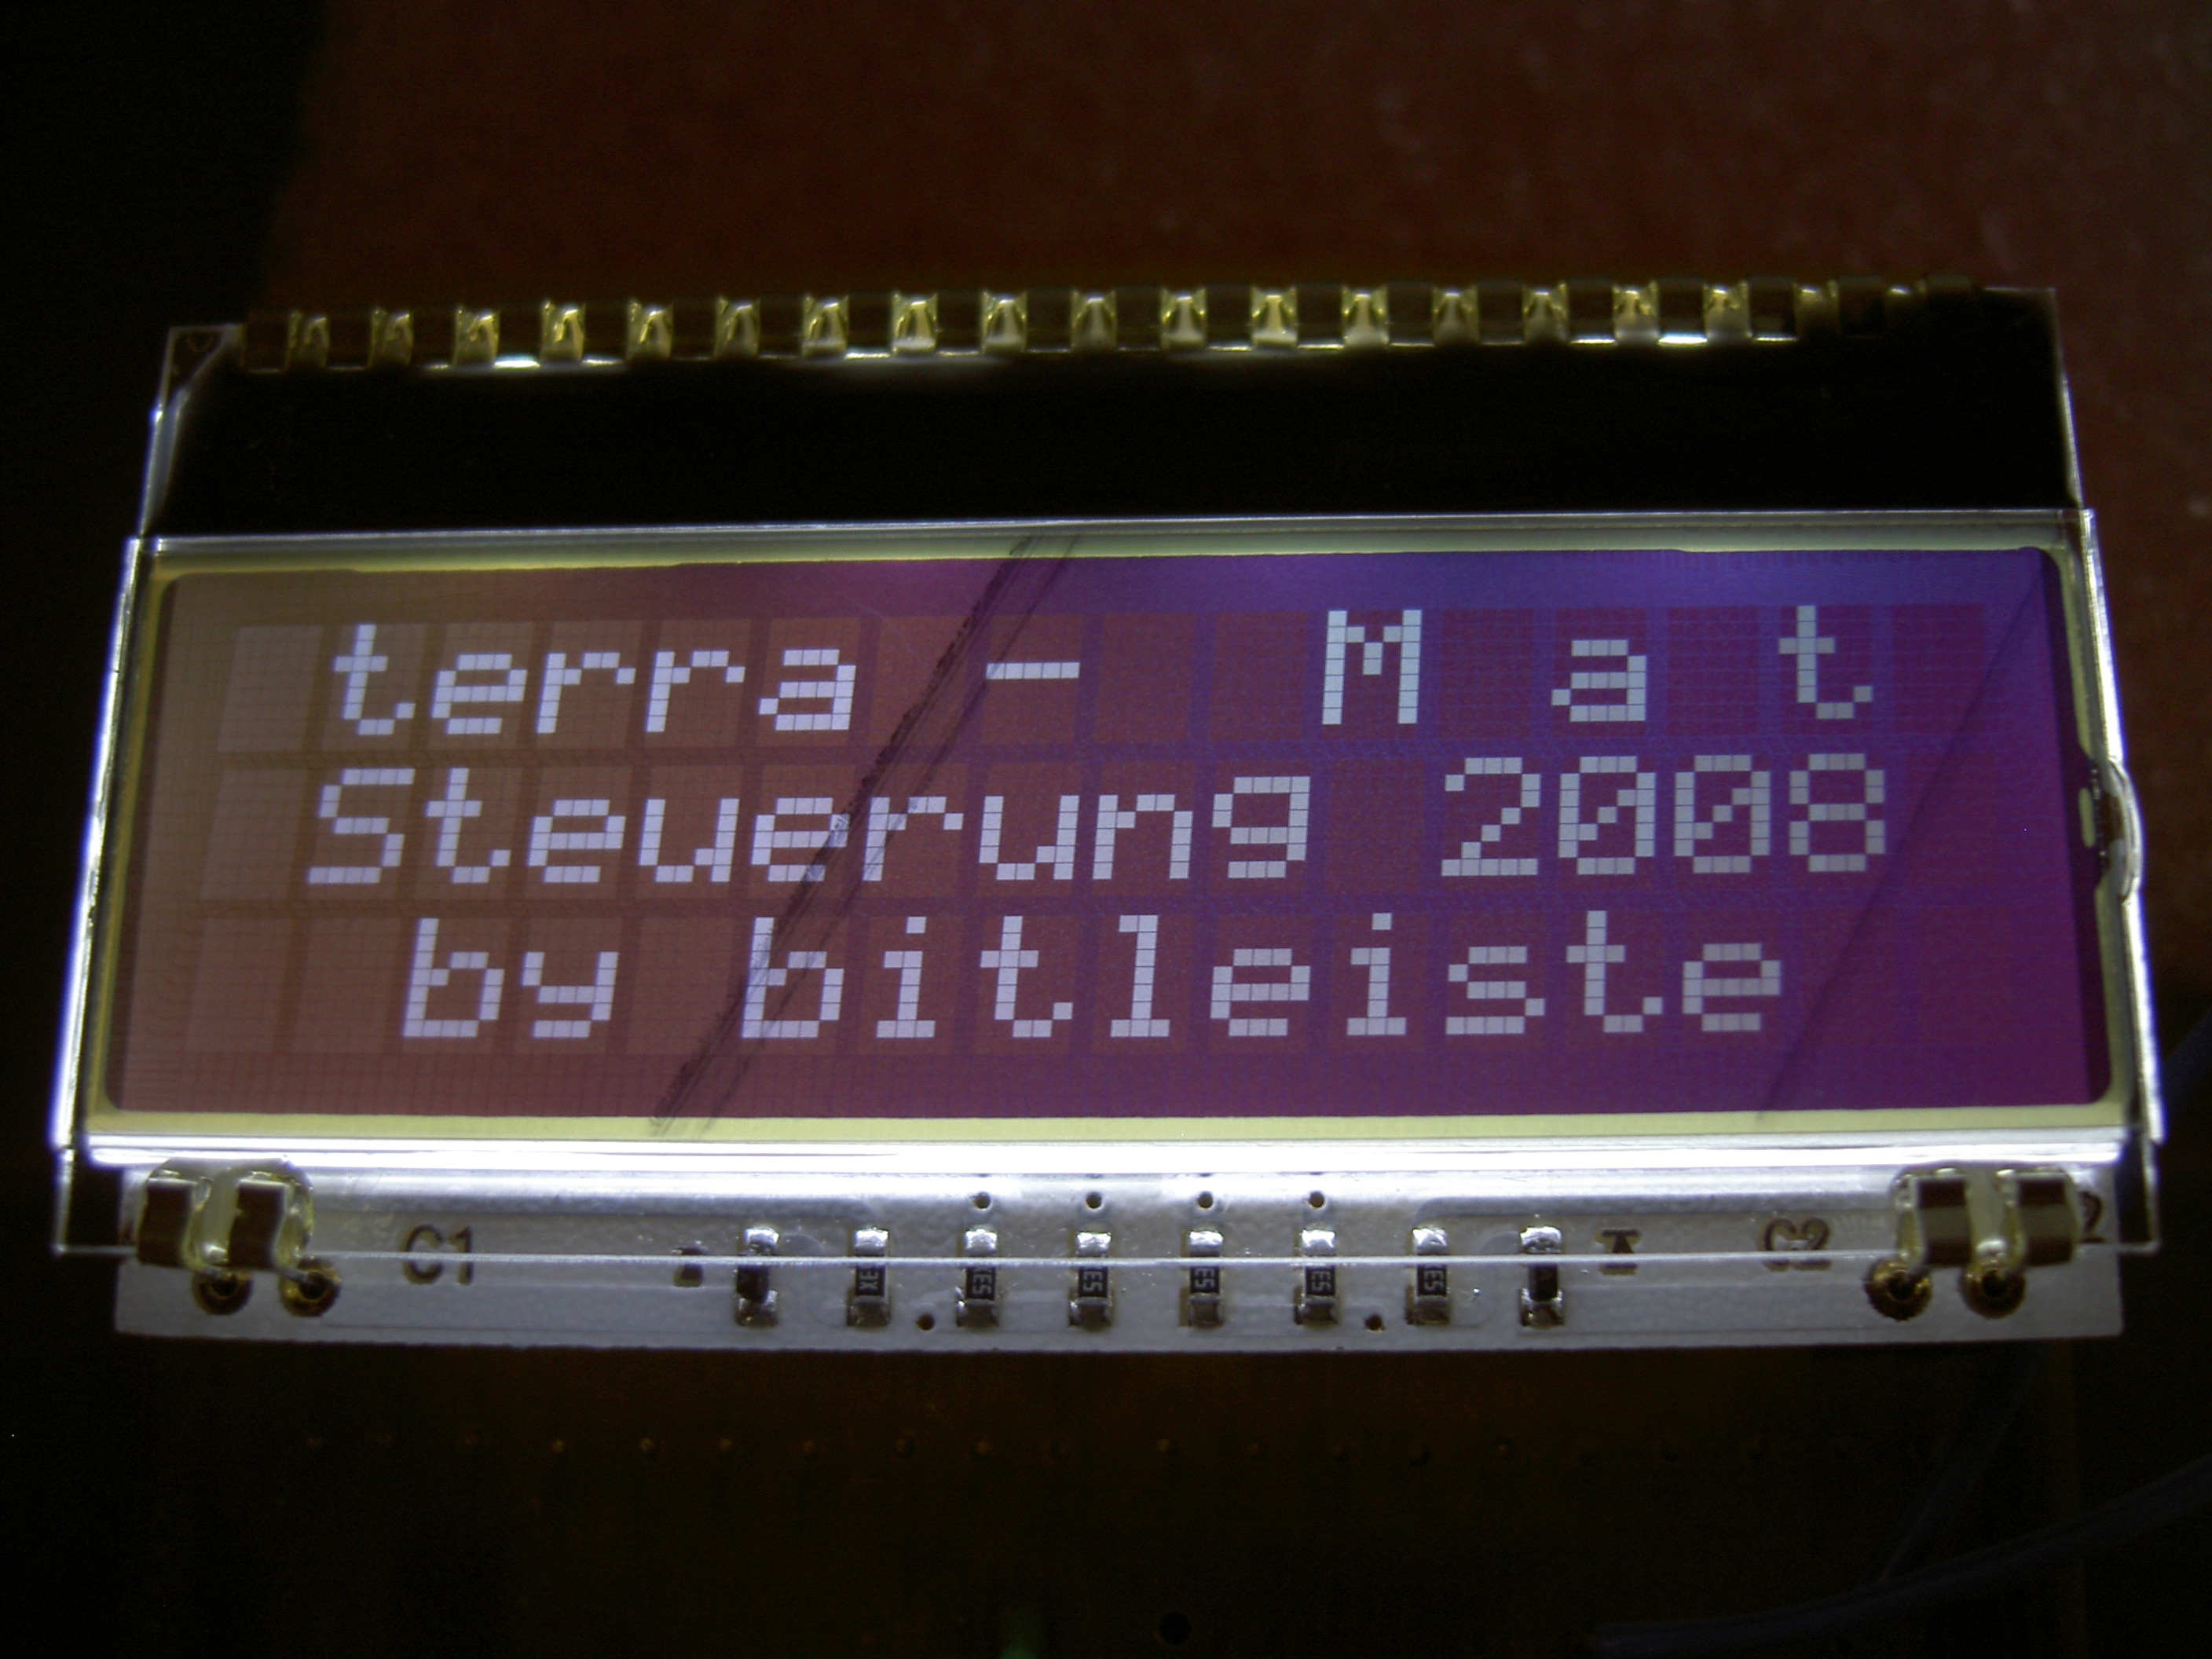 Terrarium Steuerung "terraMat" OpenSource Projekt - Mikrocontroller.net